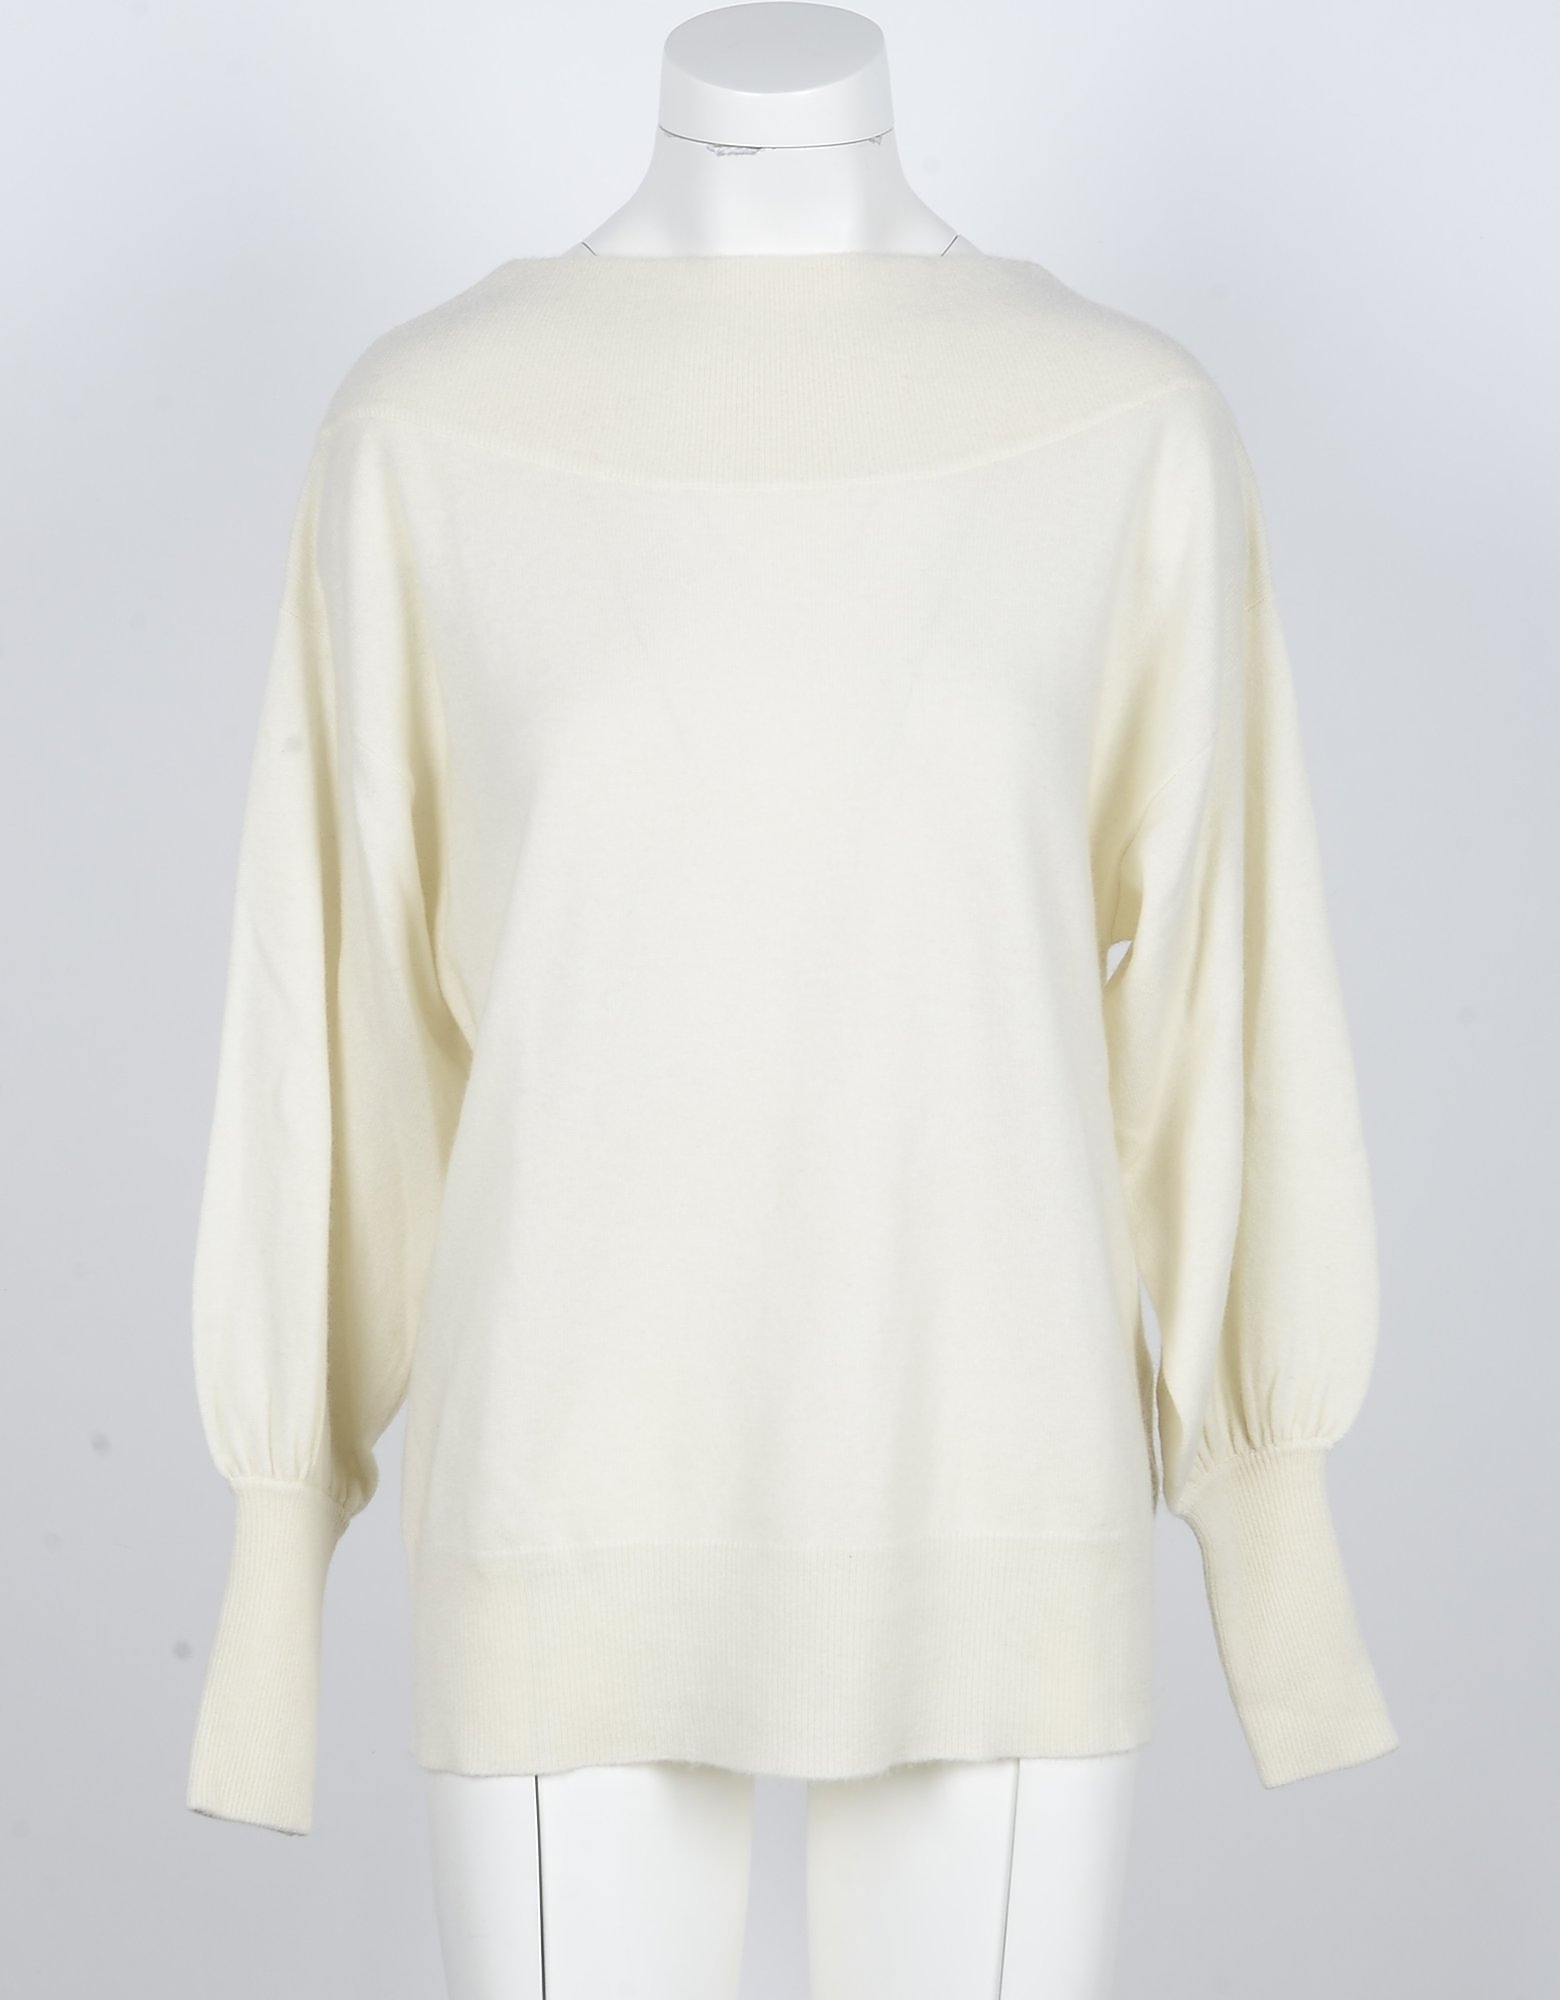 Parosh Designer Knitwear, Cream Pure Cashmere Women's Sweater